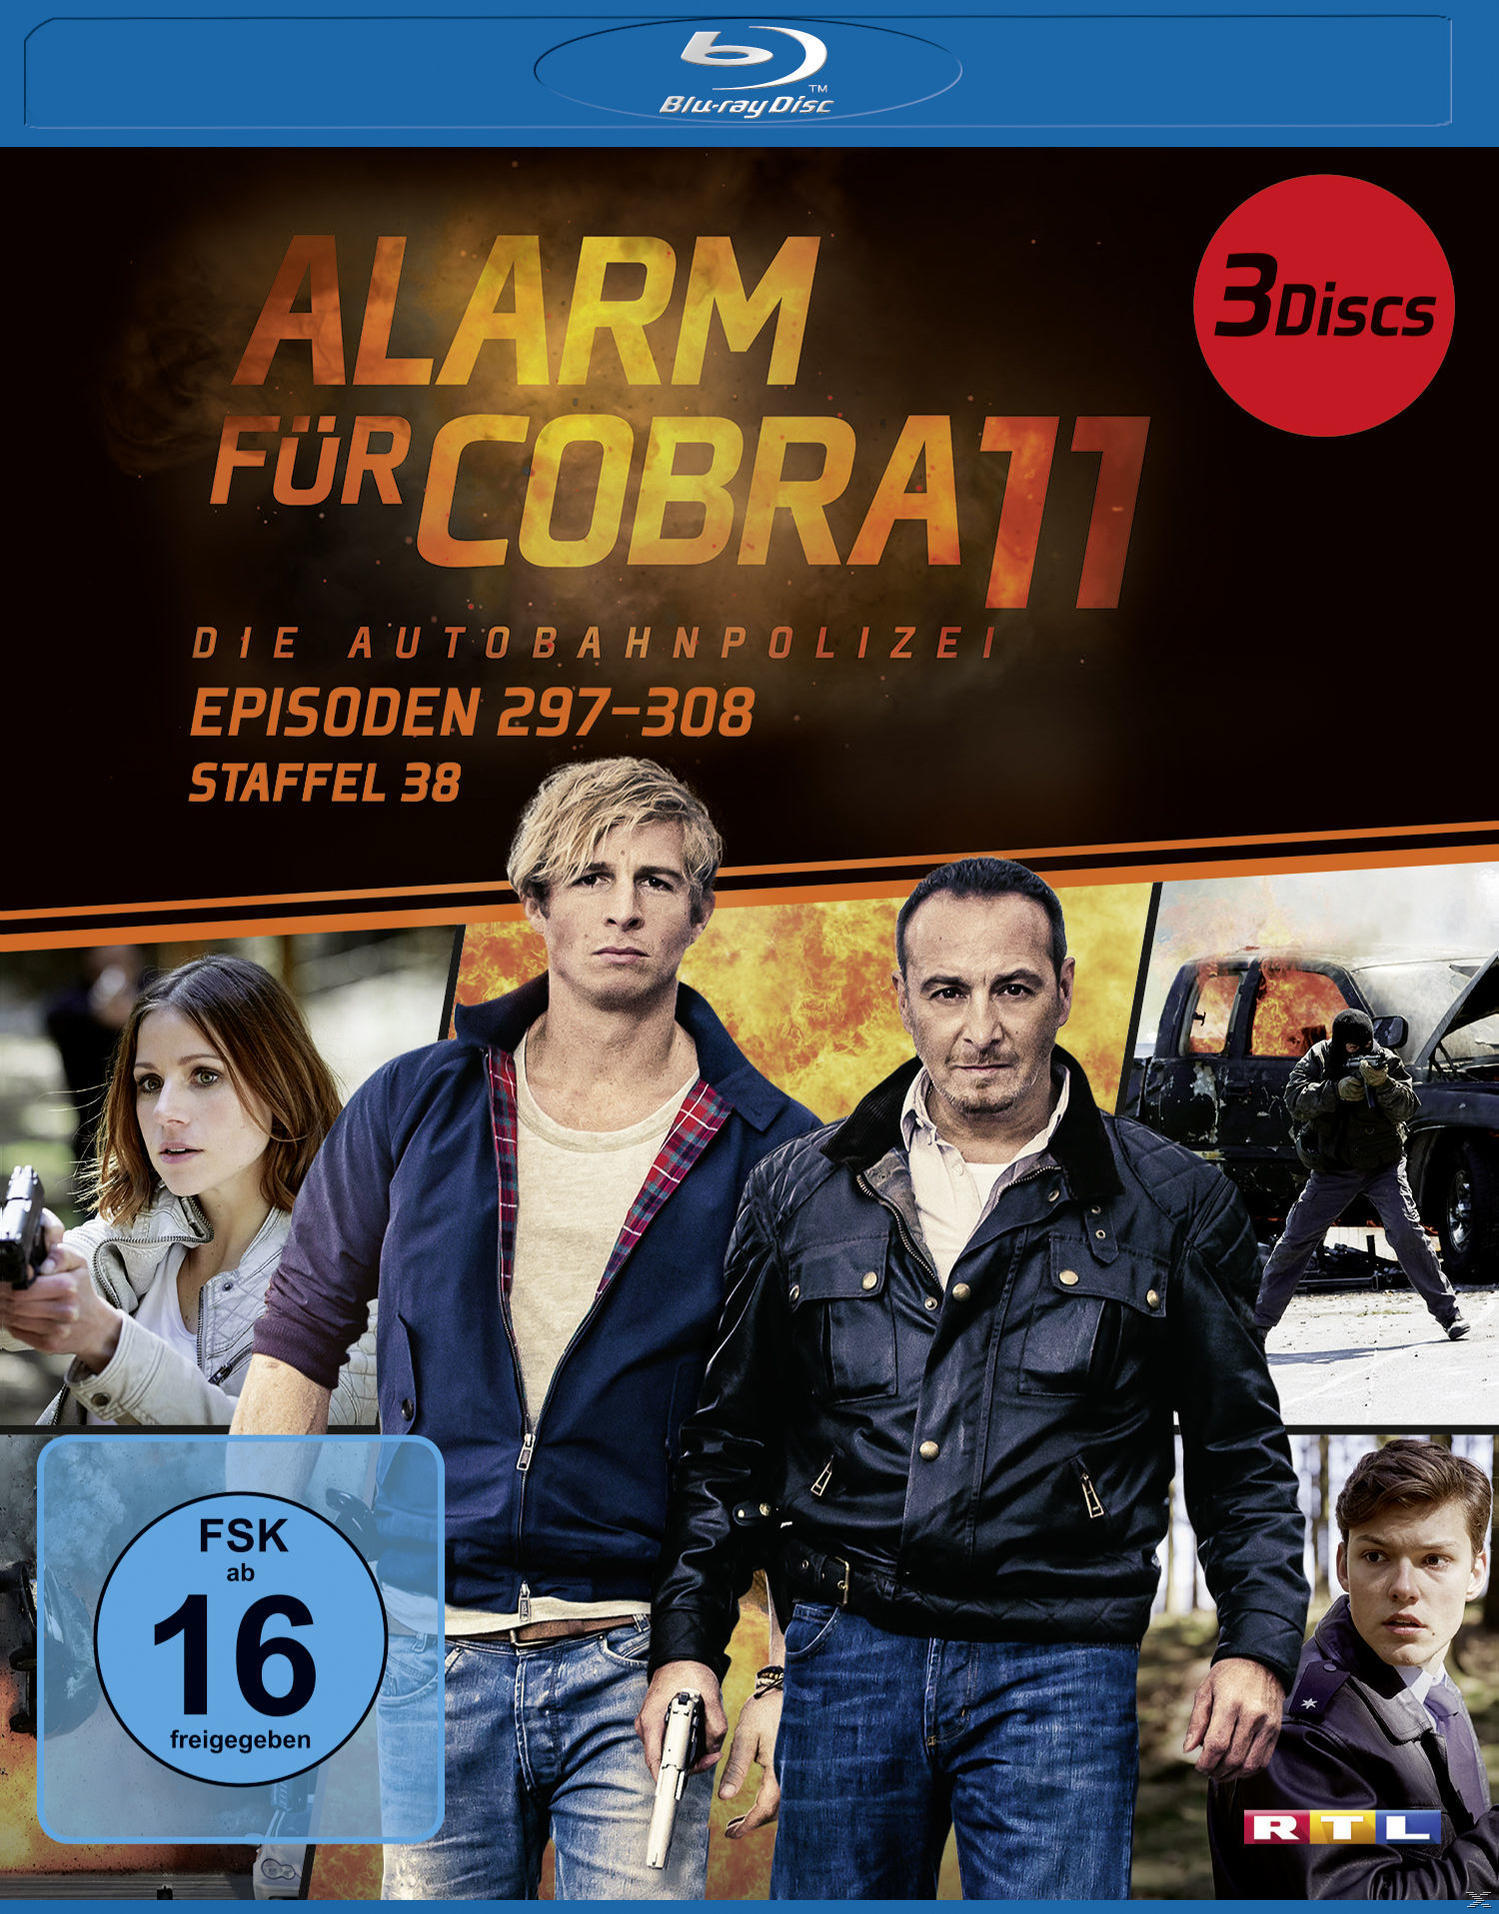 Alarm für Staffel Cobra - Blu-ray 11 38